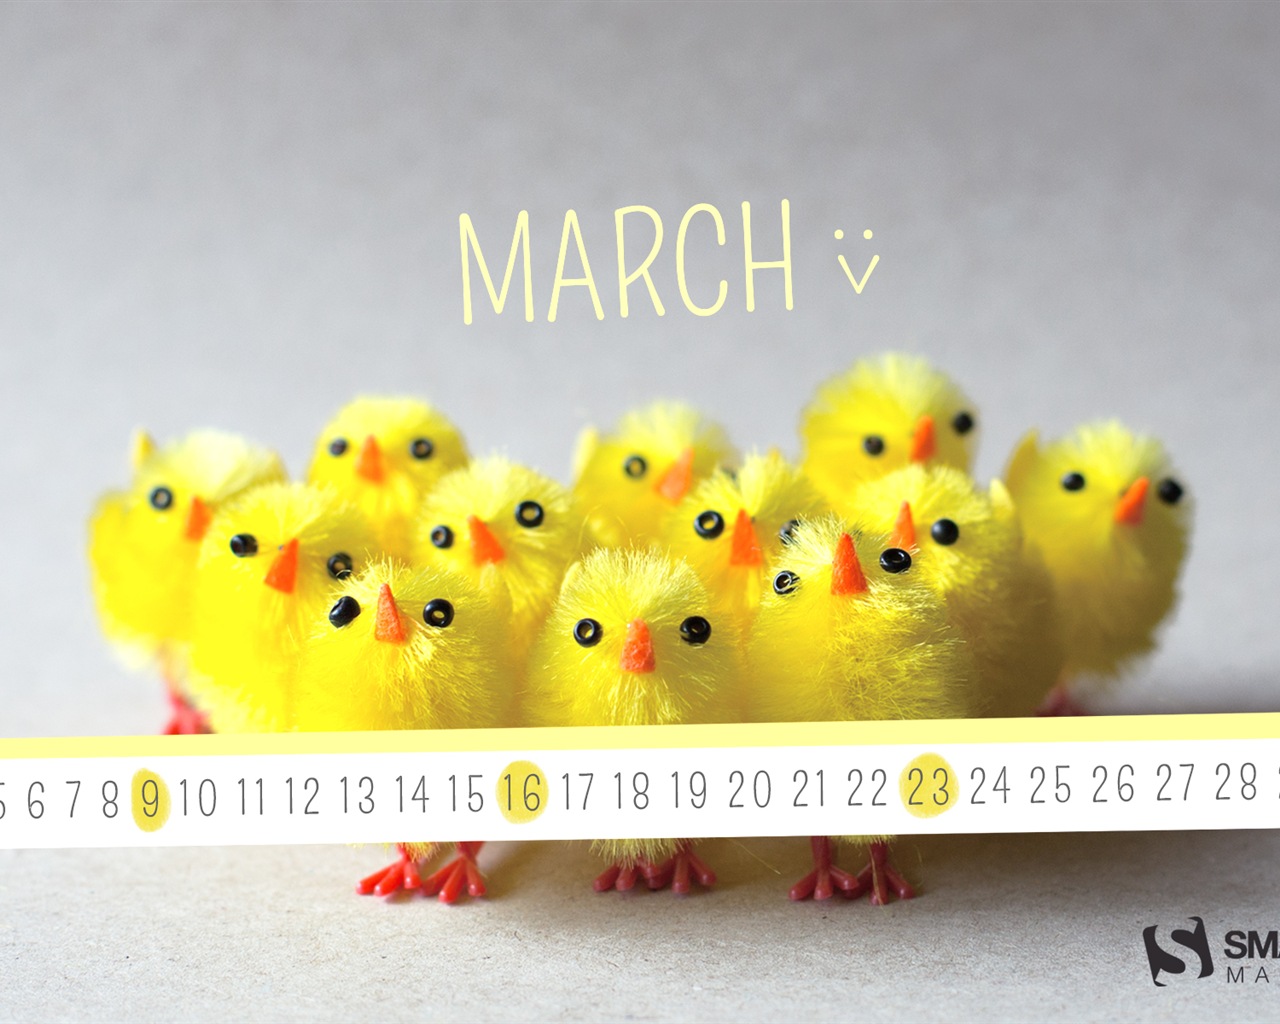 Март 2014 календарь обои (1) #20 - 1280x1024